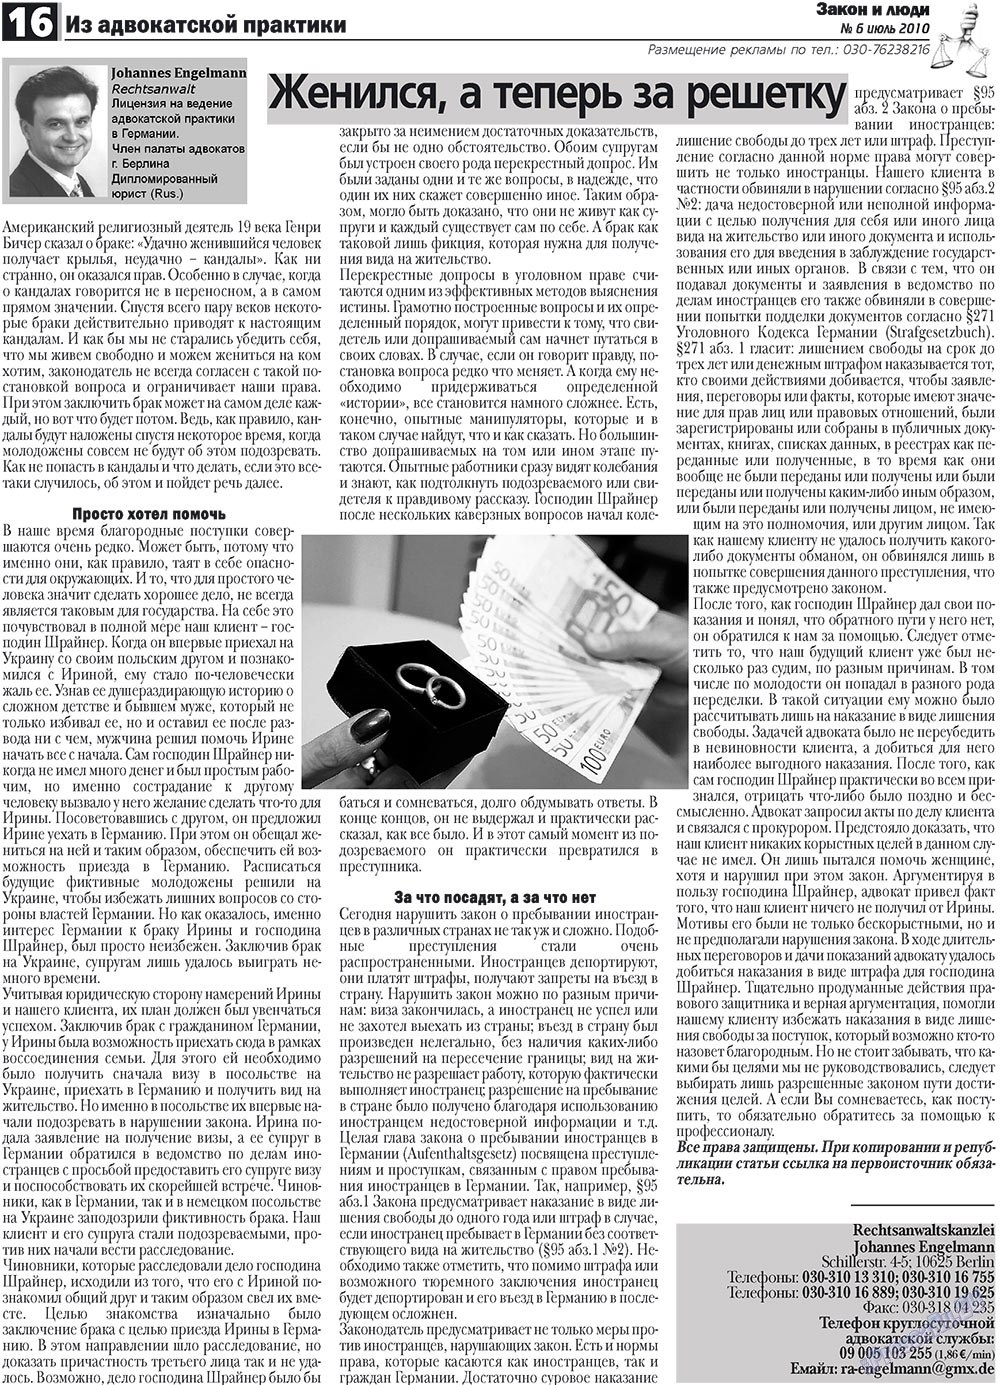 Закон и люди, газета. 2010 №6 стр.16